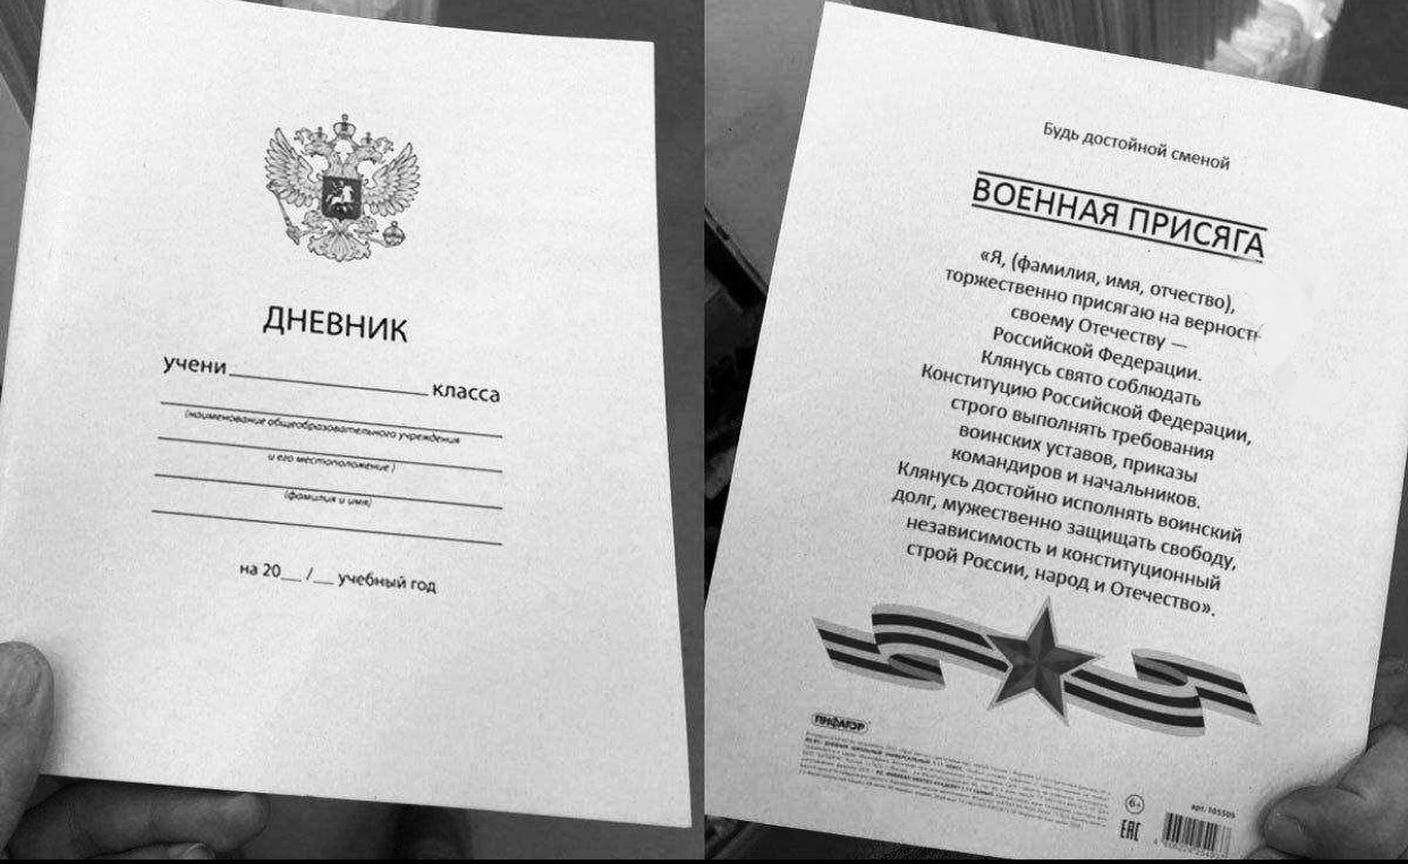 FOTO 18 - Il modello del giuramento di fedeltà alla patria, cioè alla Federazione russa. Viene fatto leggere al ai cittadini che ricevono la cittadinanza e il passaporto.jpeg